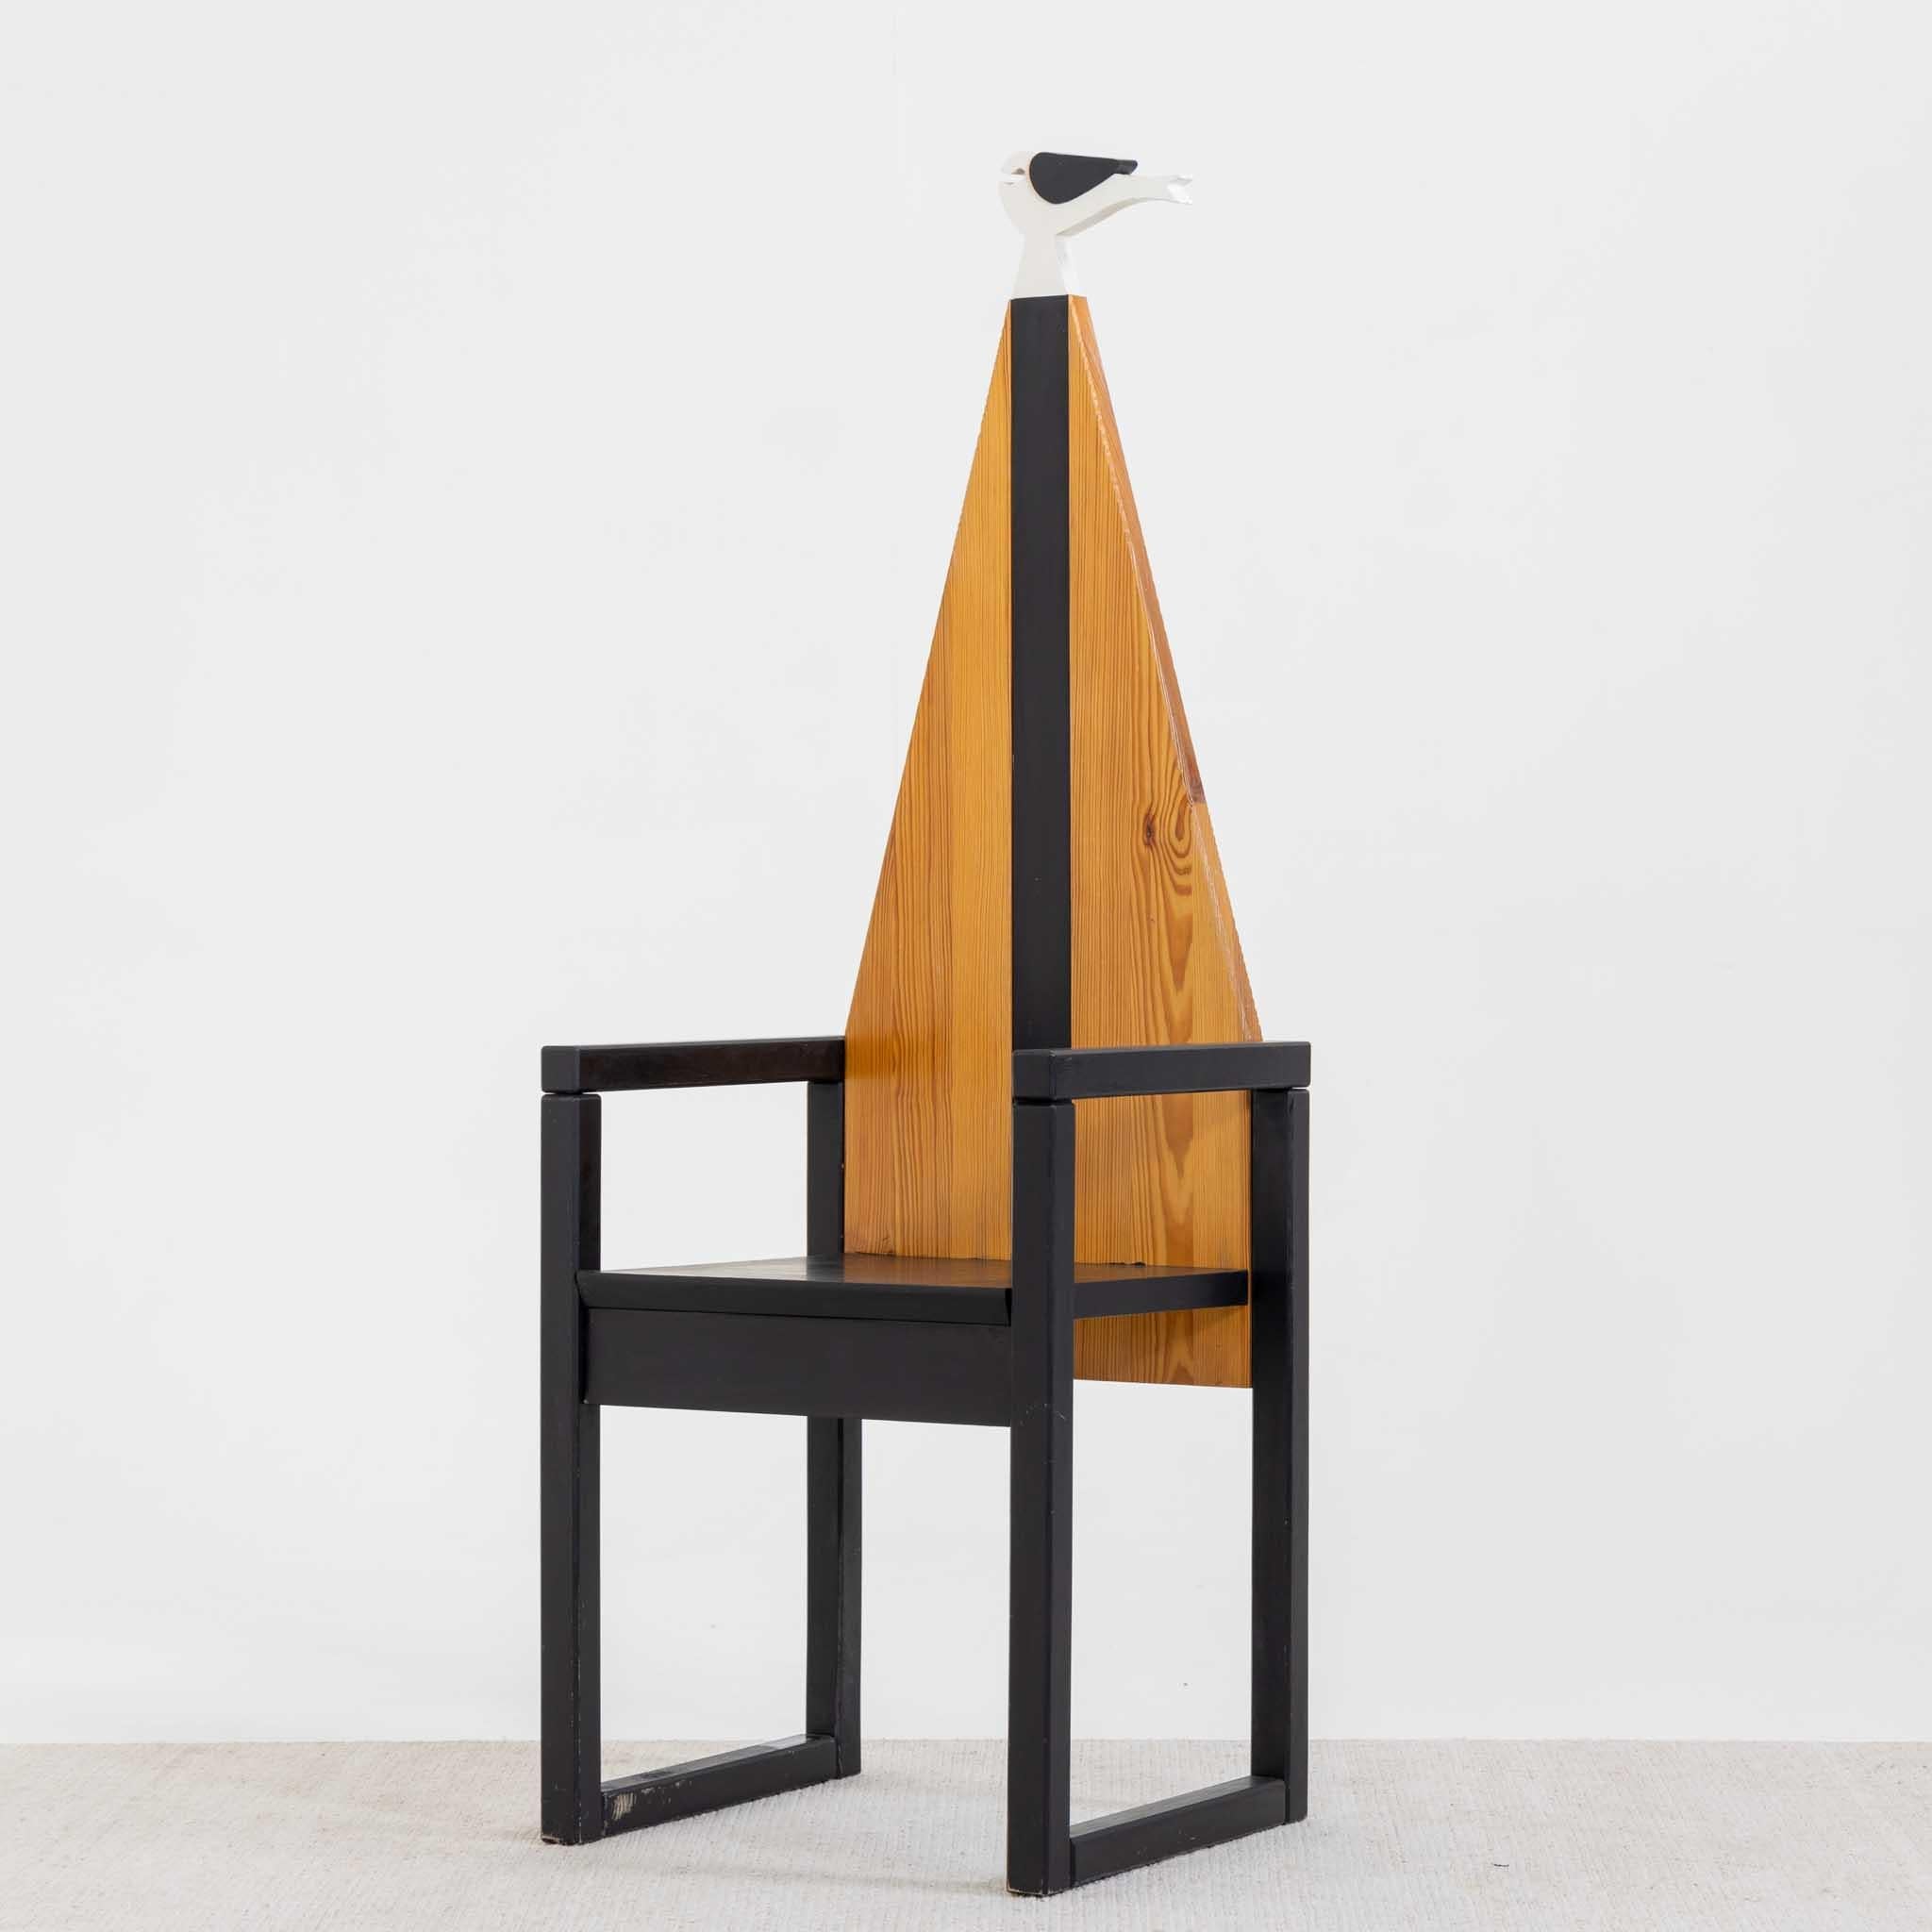 Chaise avec structure en bois noir de forme géométrique et dossier triangulaire en hêtre avec bande noire contrastée et oiseau stylisé en noir et blanc. Label Legnomagia Italie sur la base.